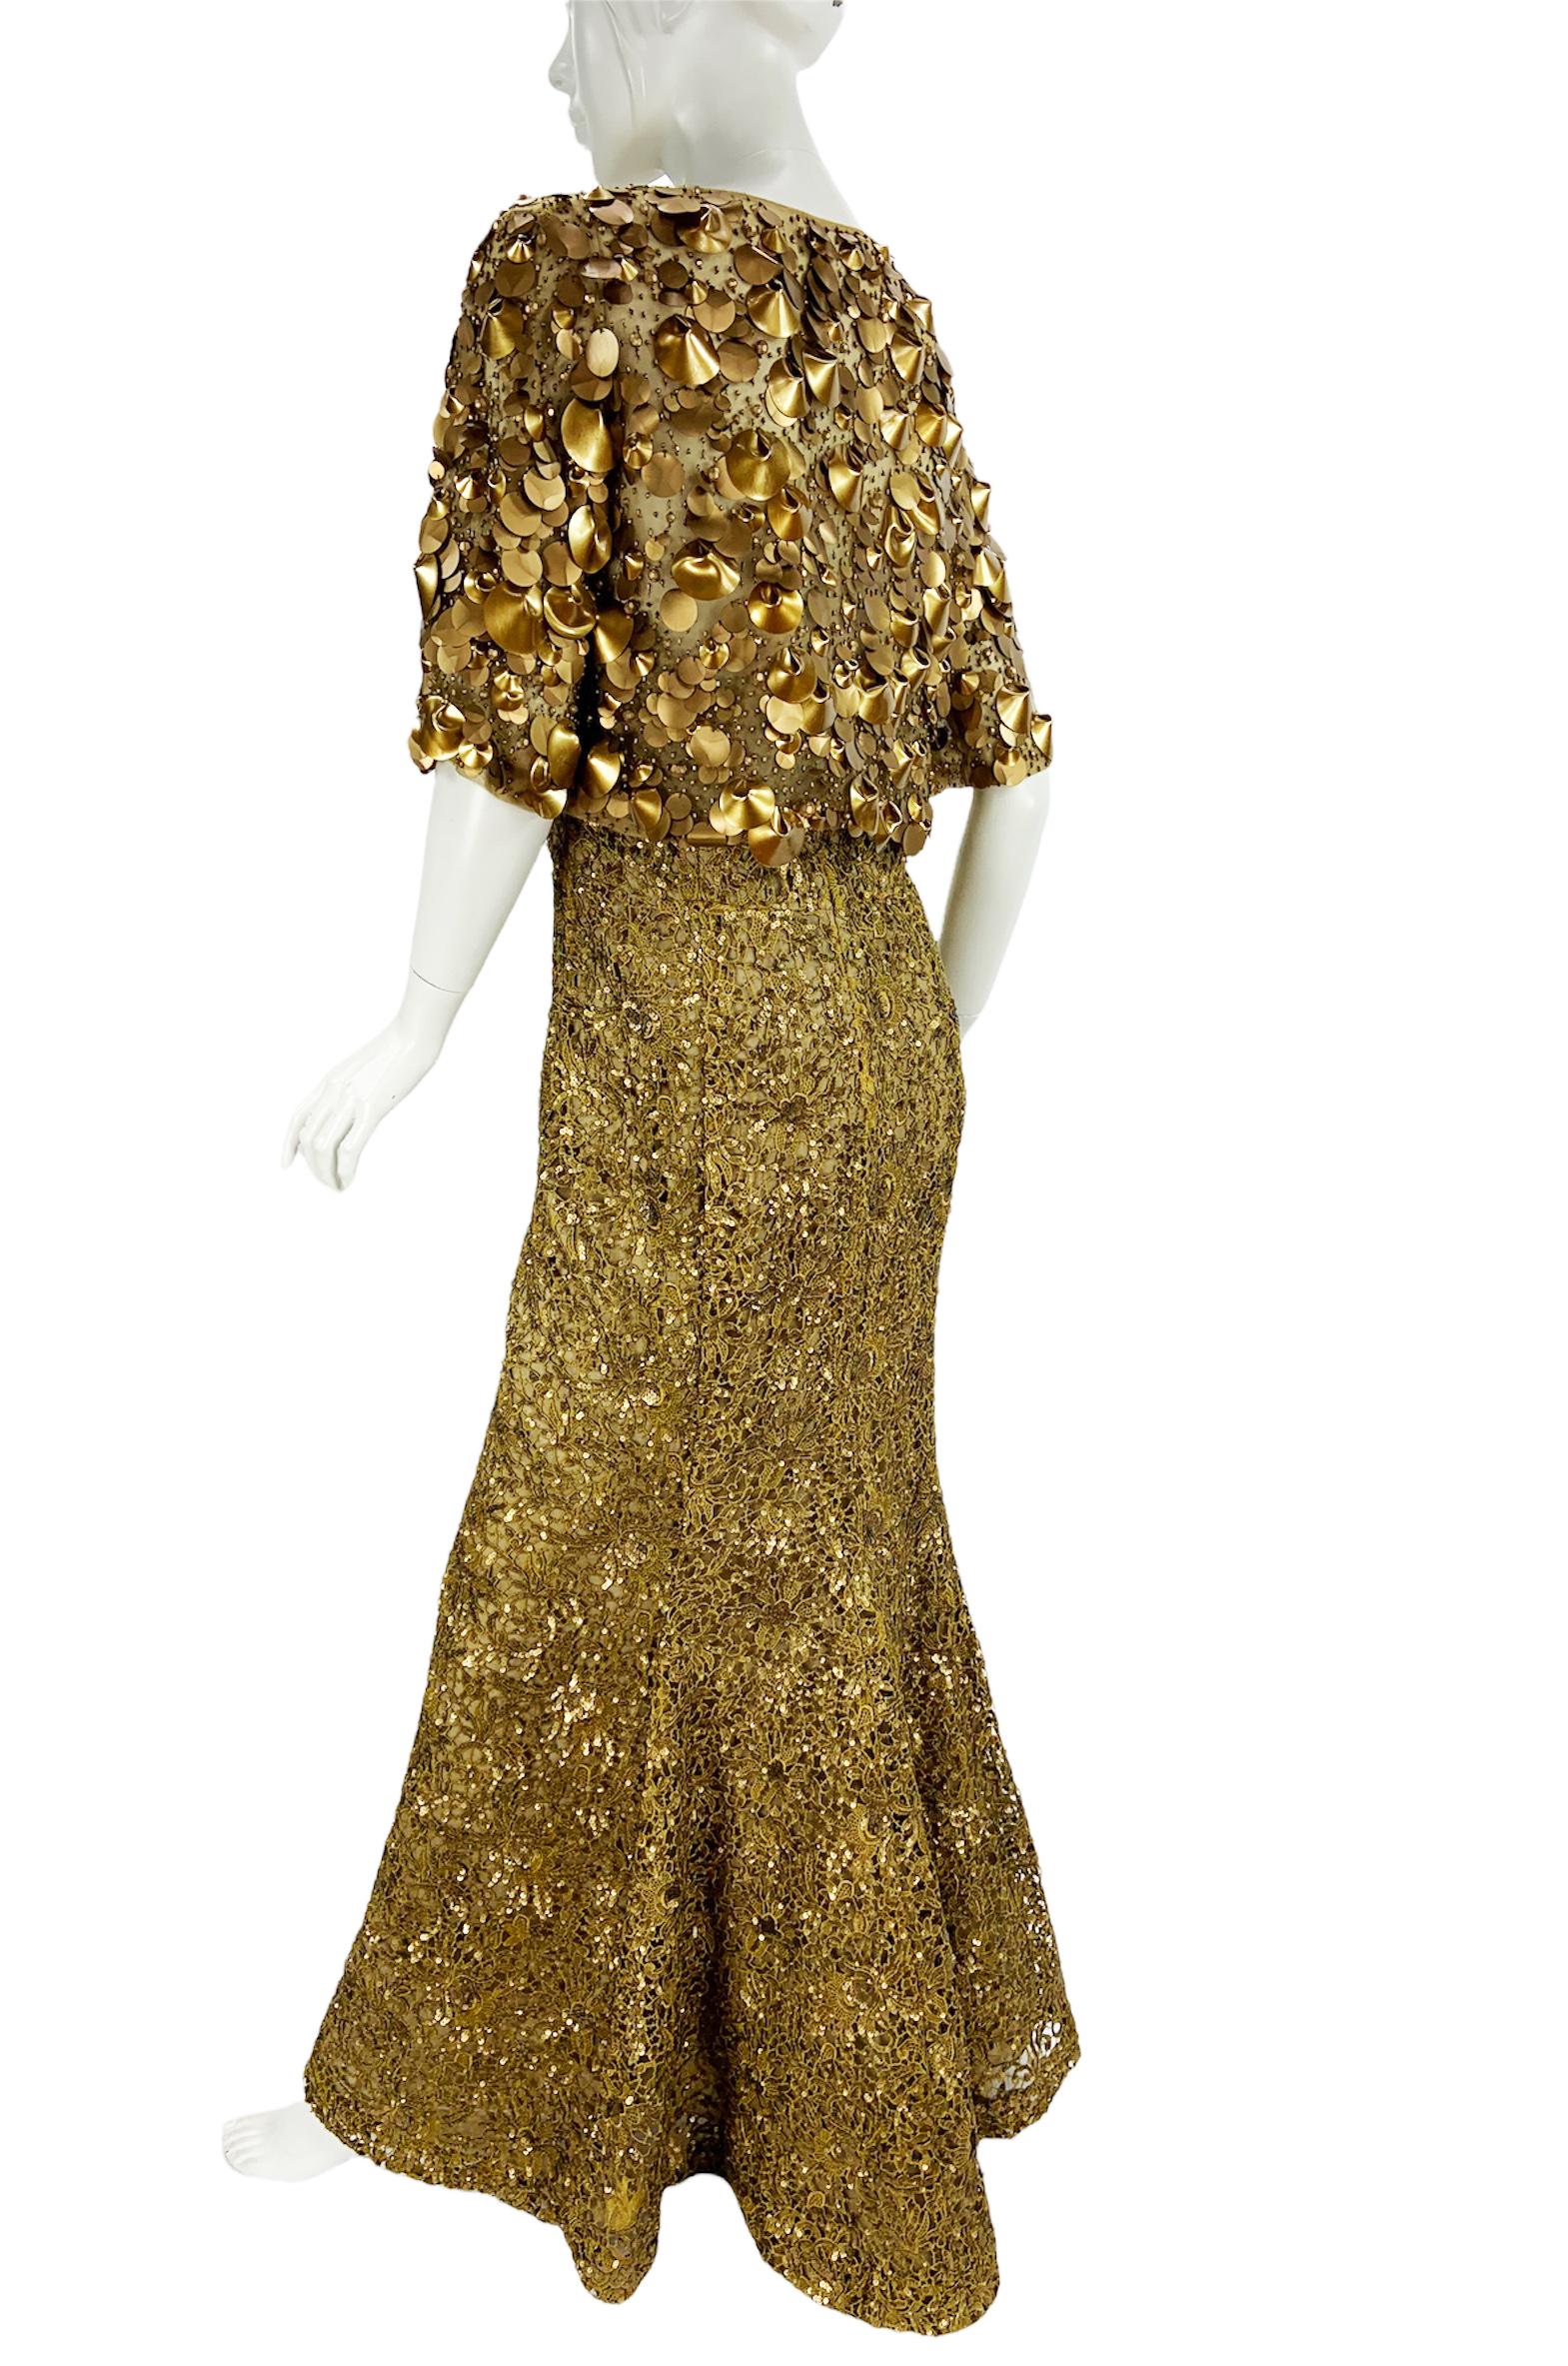 Brown Oscar De La Renta PF 2012 Gold Lace Sequin Embellished Dress Gown + Jacket  For Sale